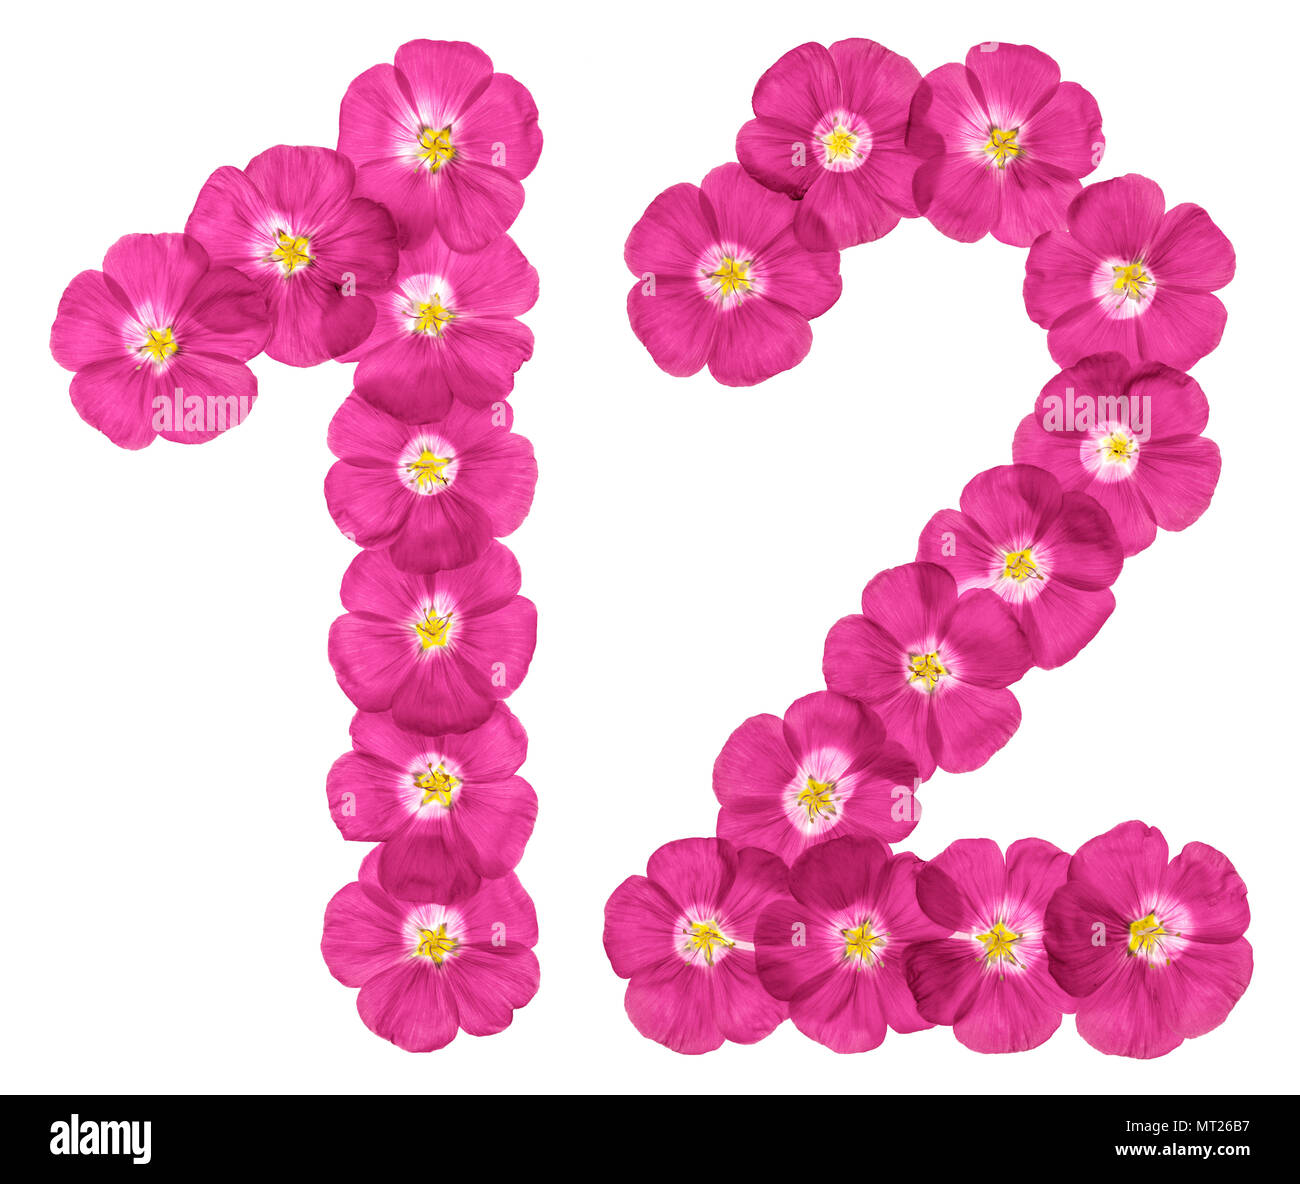 Arabische Zahl 12, zwölf, von rosa Blüten von Flachs, auf weißem